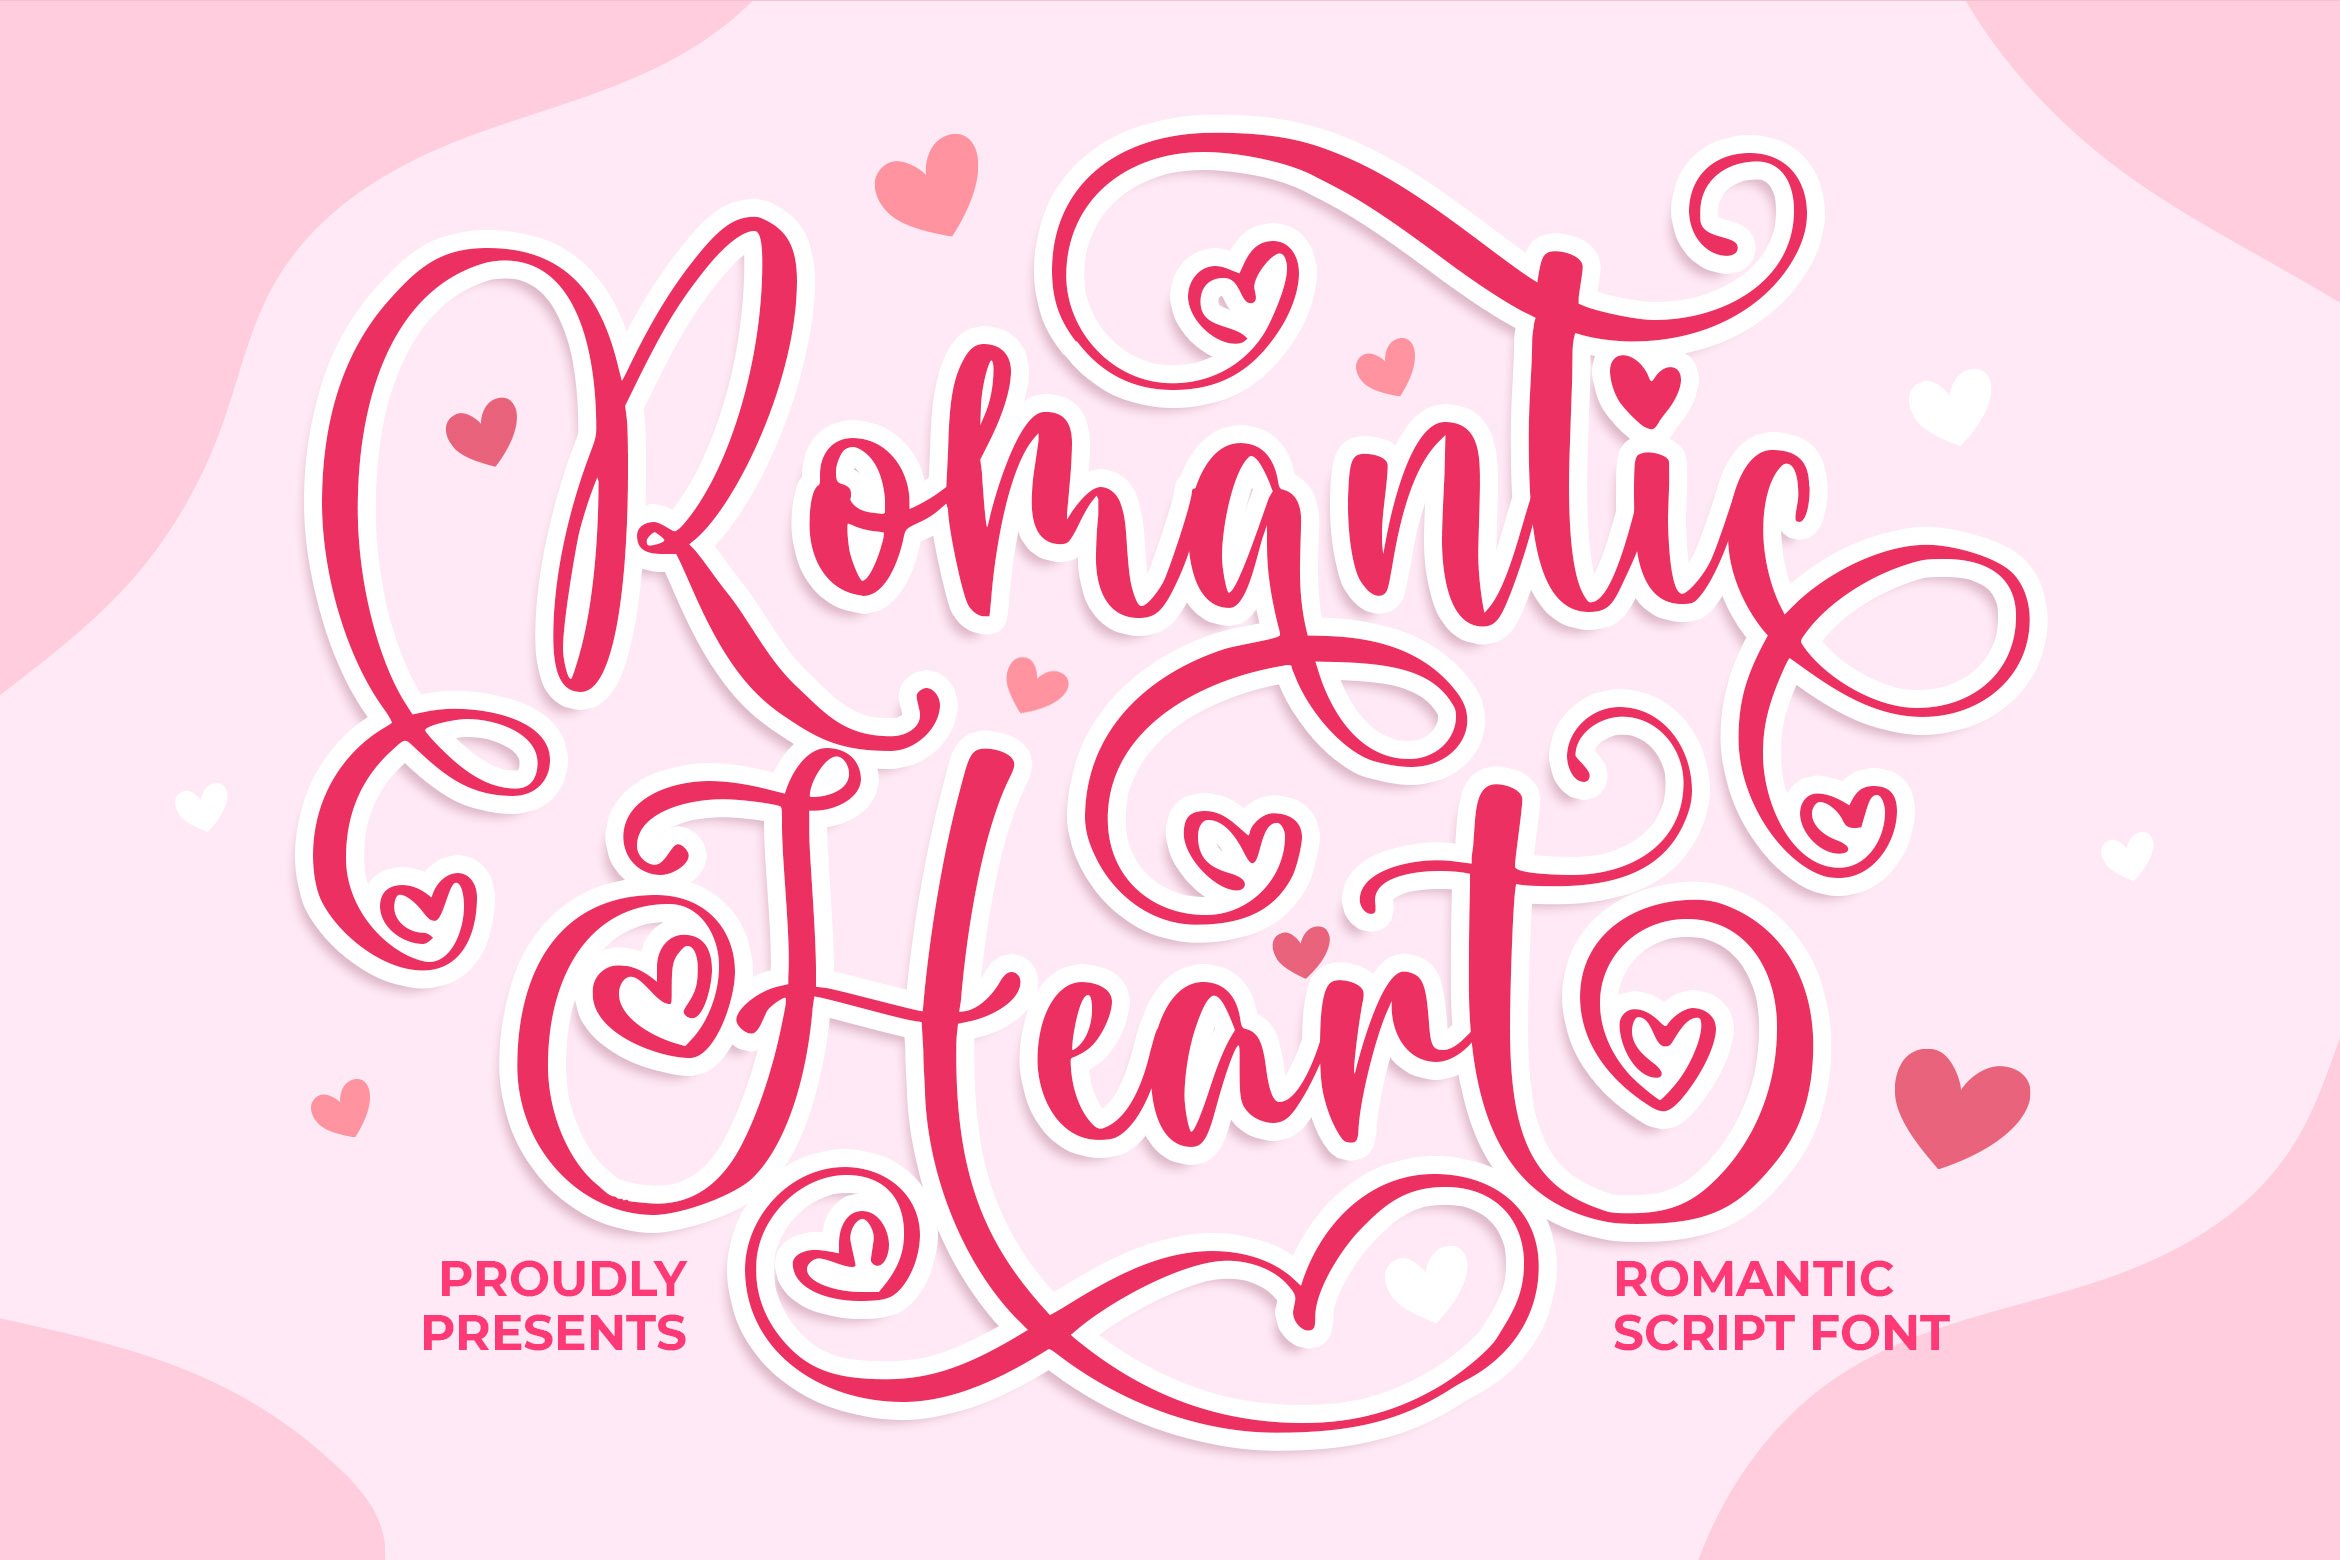 Romantic Heart - Script Font cover image.